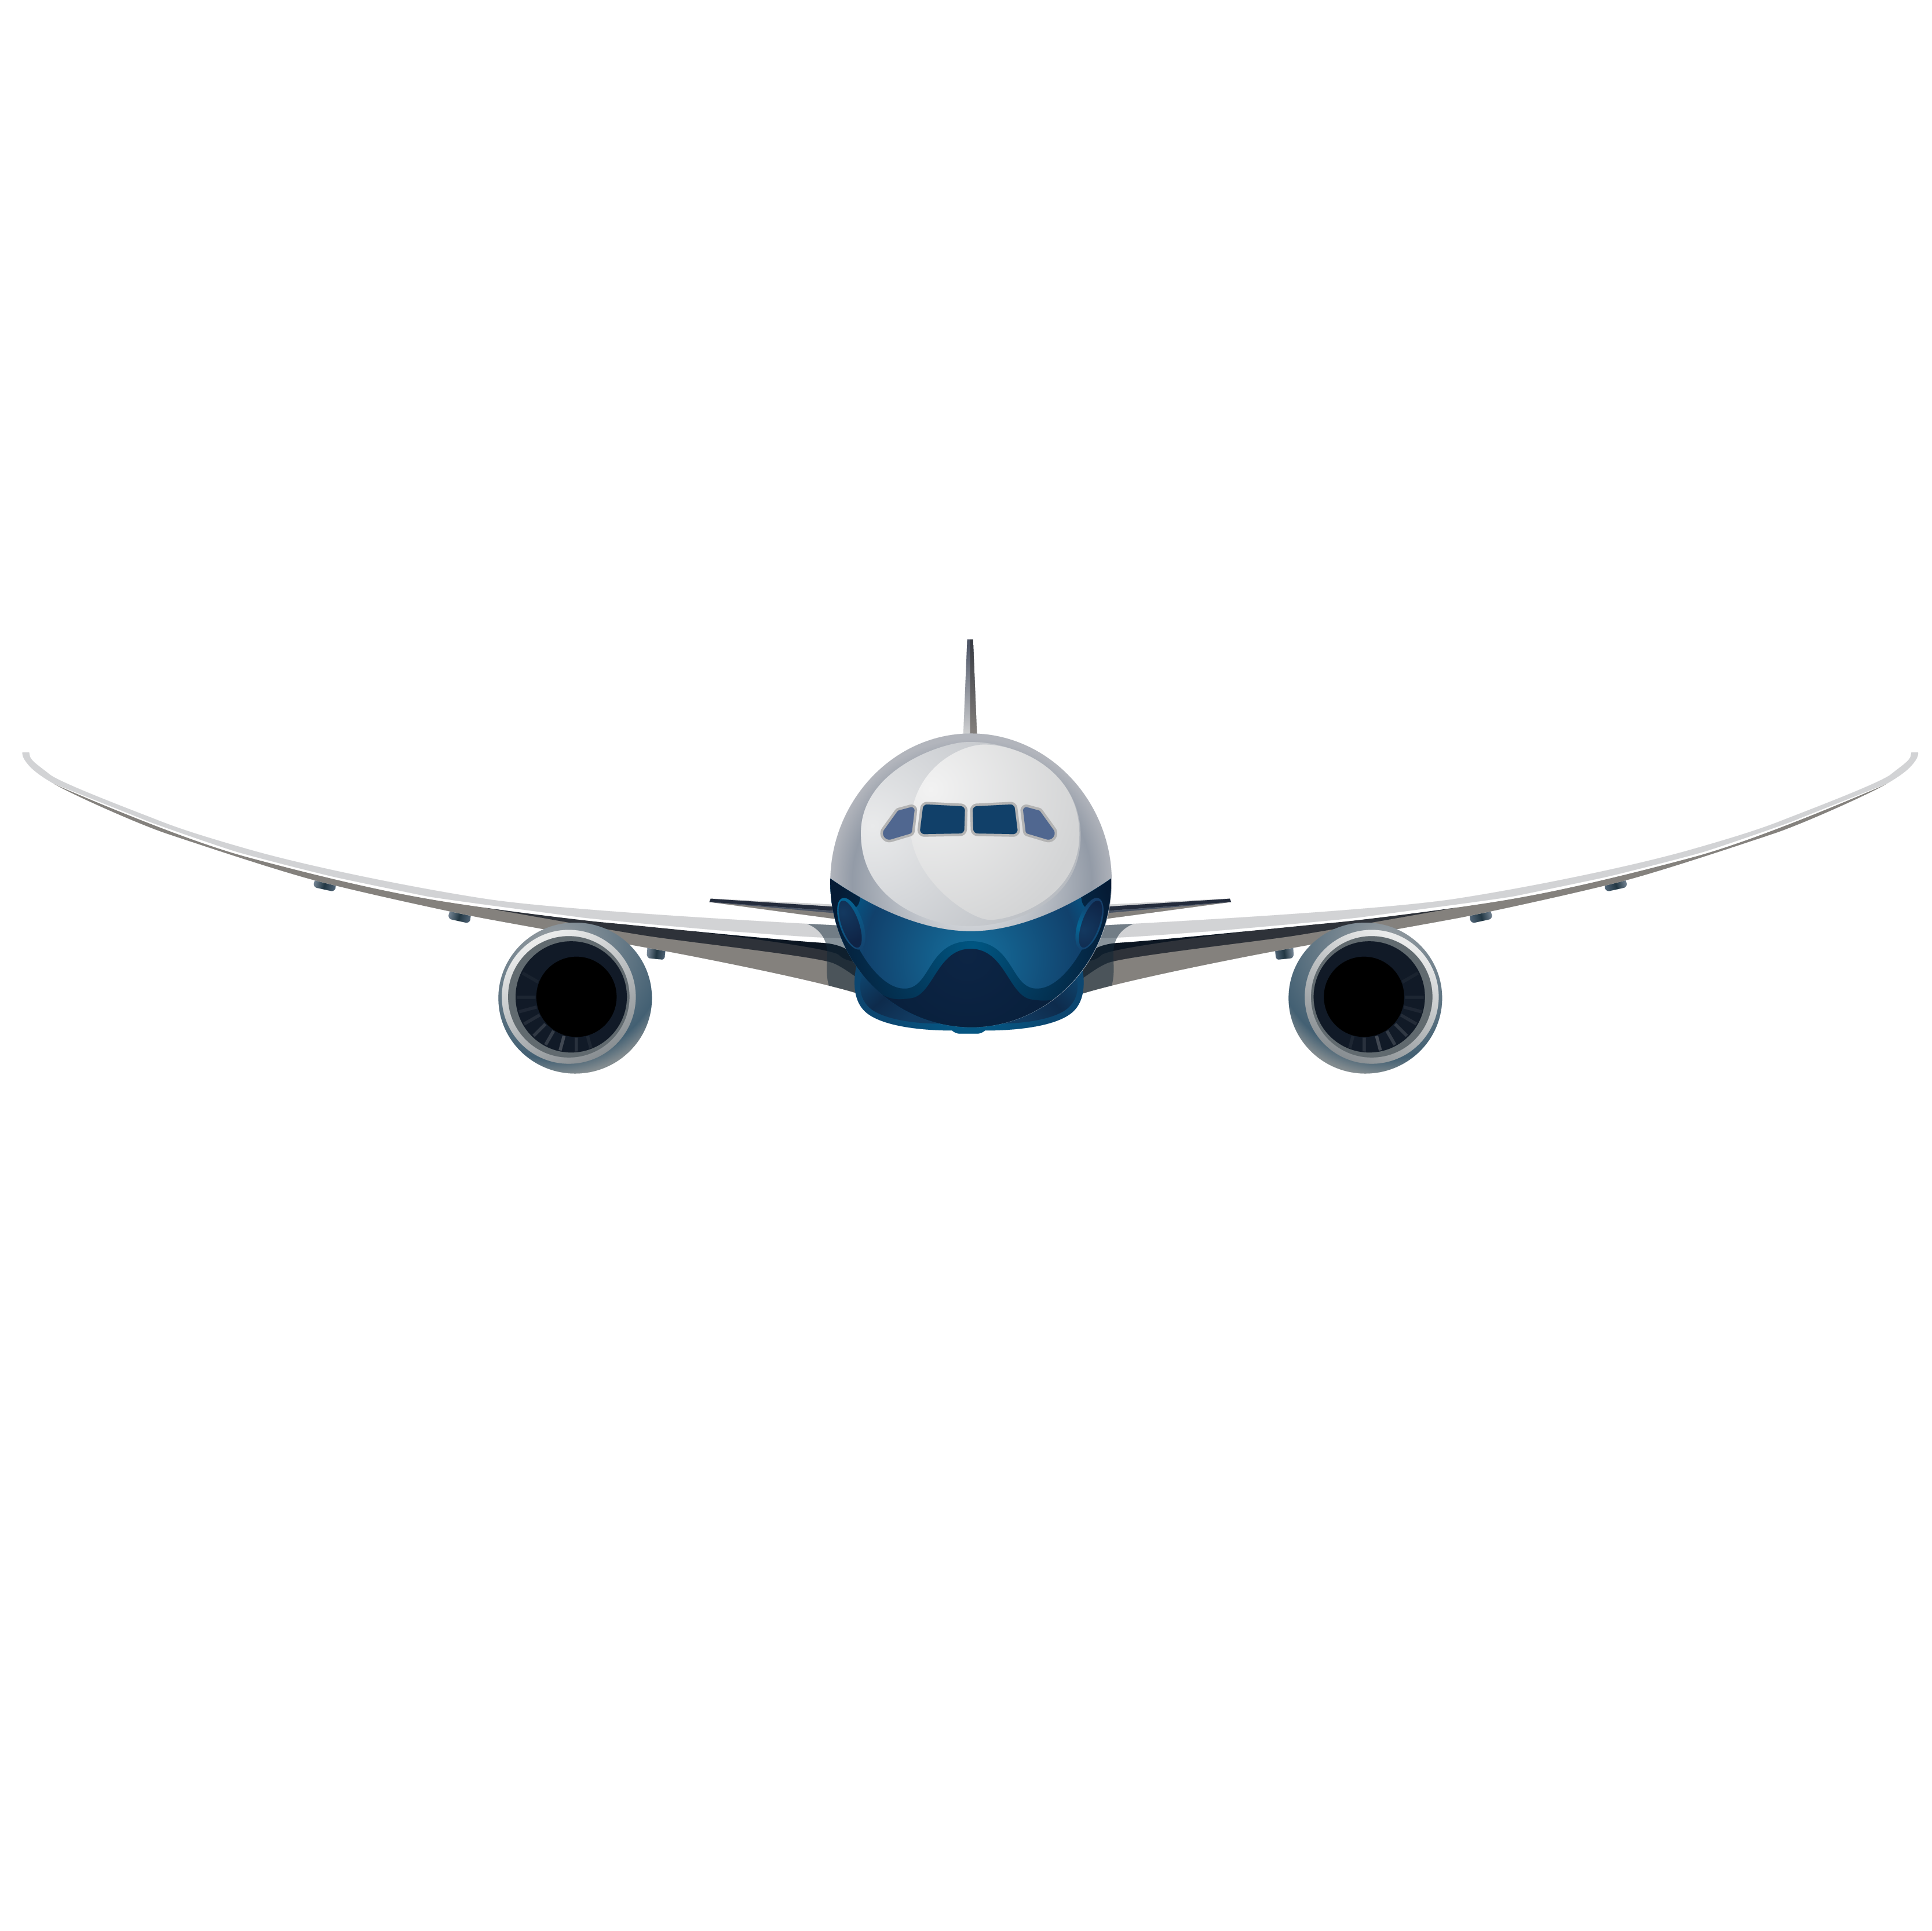 Watch U.S. Fly